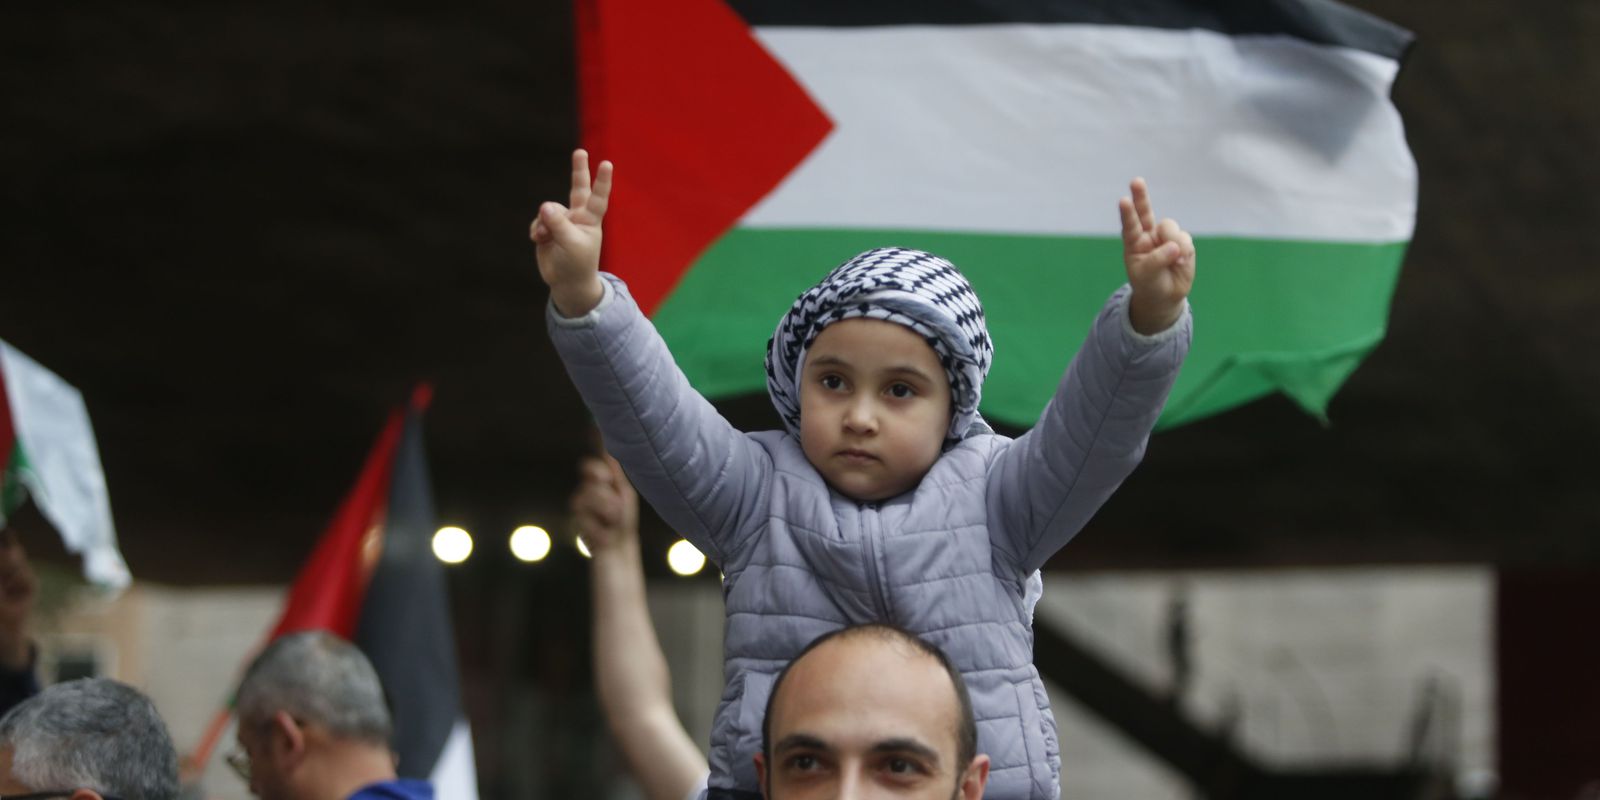 Ato em SP pede paz em Gaza; manifesto condena terrorismo